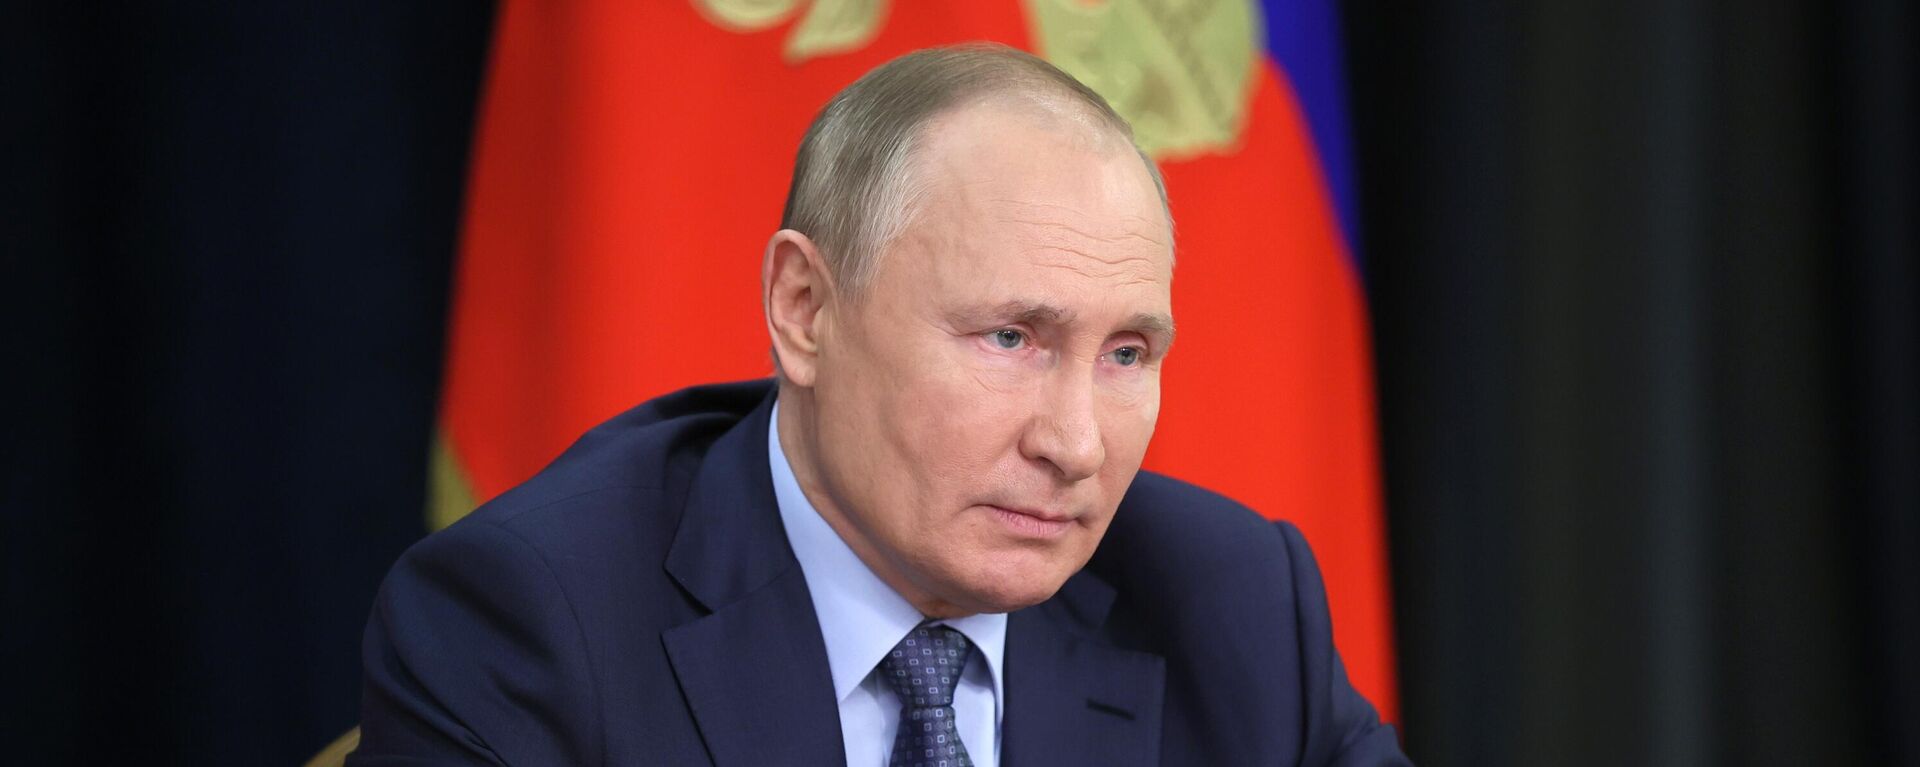 El presidente de Rusia, Vladímir Putin, durante una reunión sobre asuntos económicos, el 7 de diciembre de 2021 - Sputnik Mundo, 1920, 13.12.2021